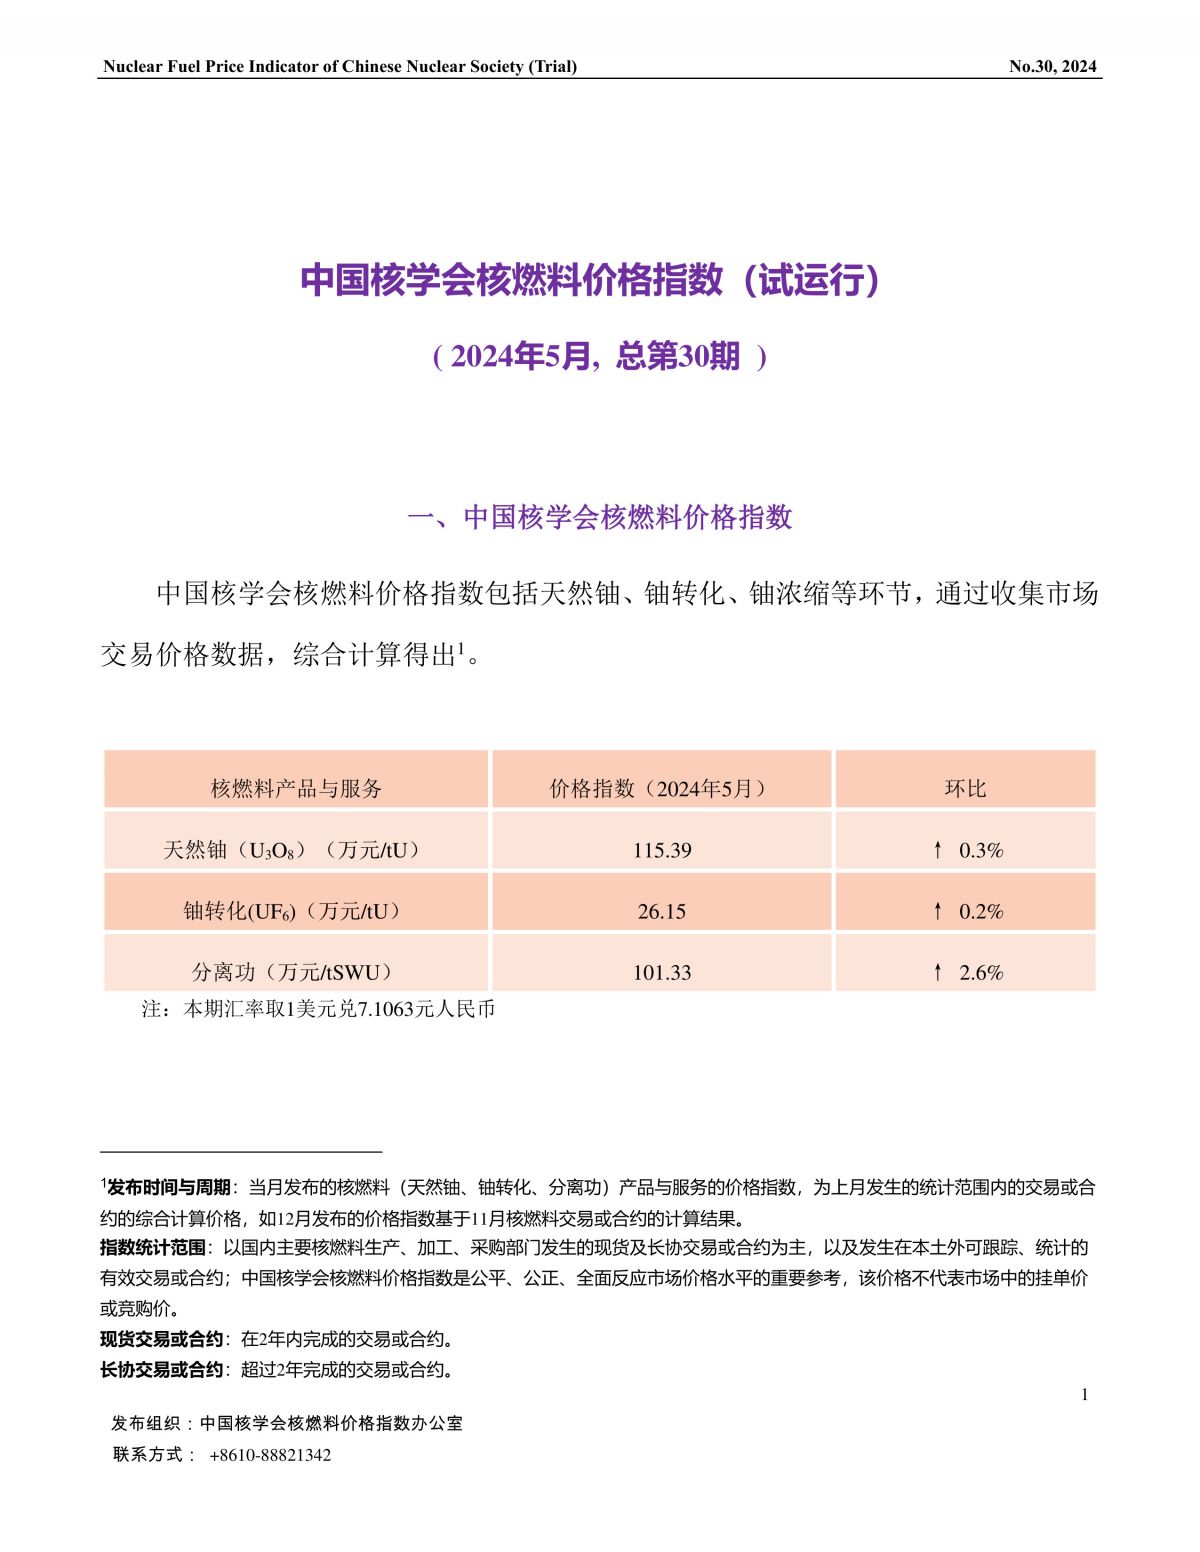 中国核学会核燃料价格指数(试运行)（2024年5月,总第30期）_CN-final-1.jpg